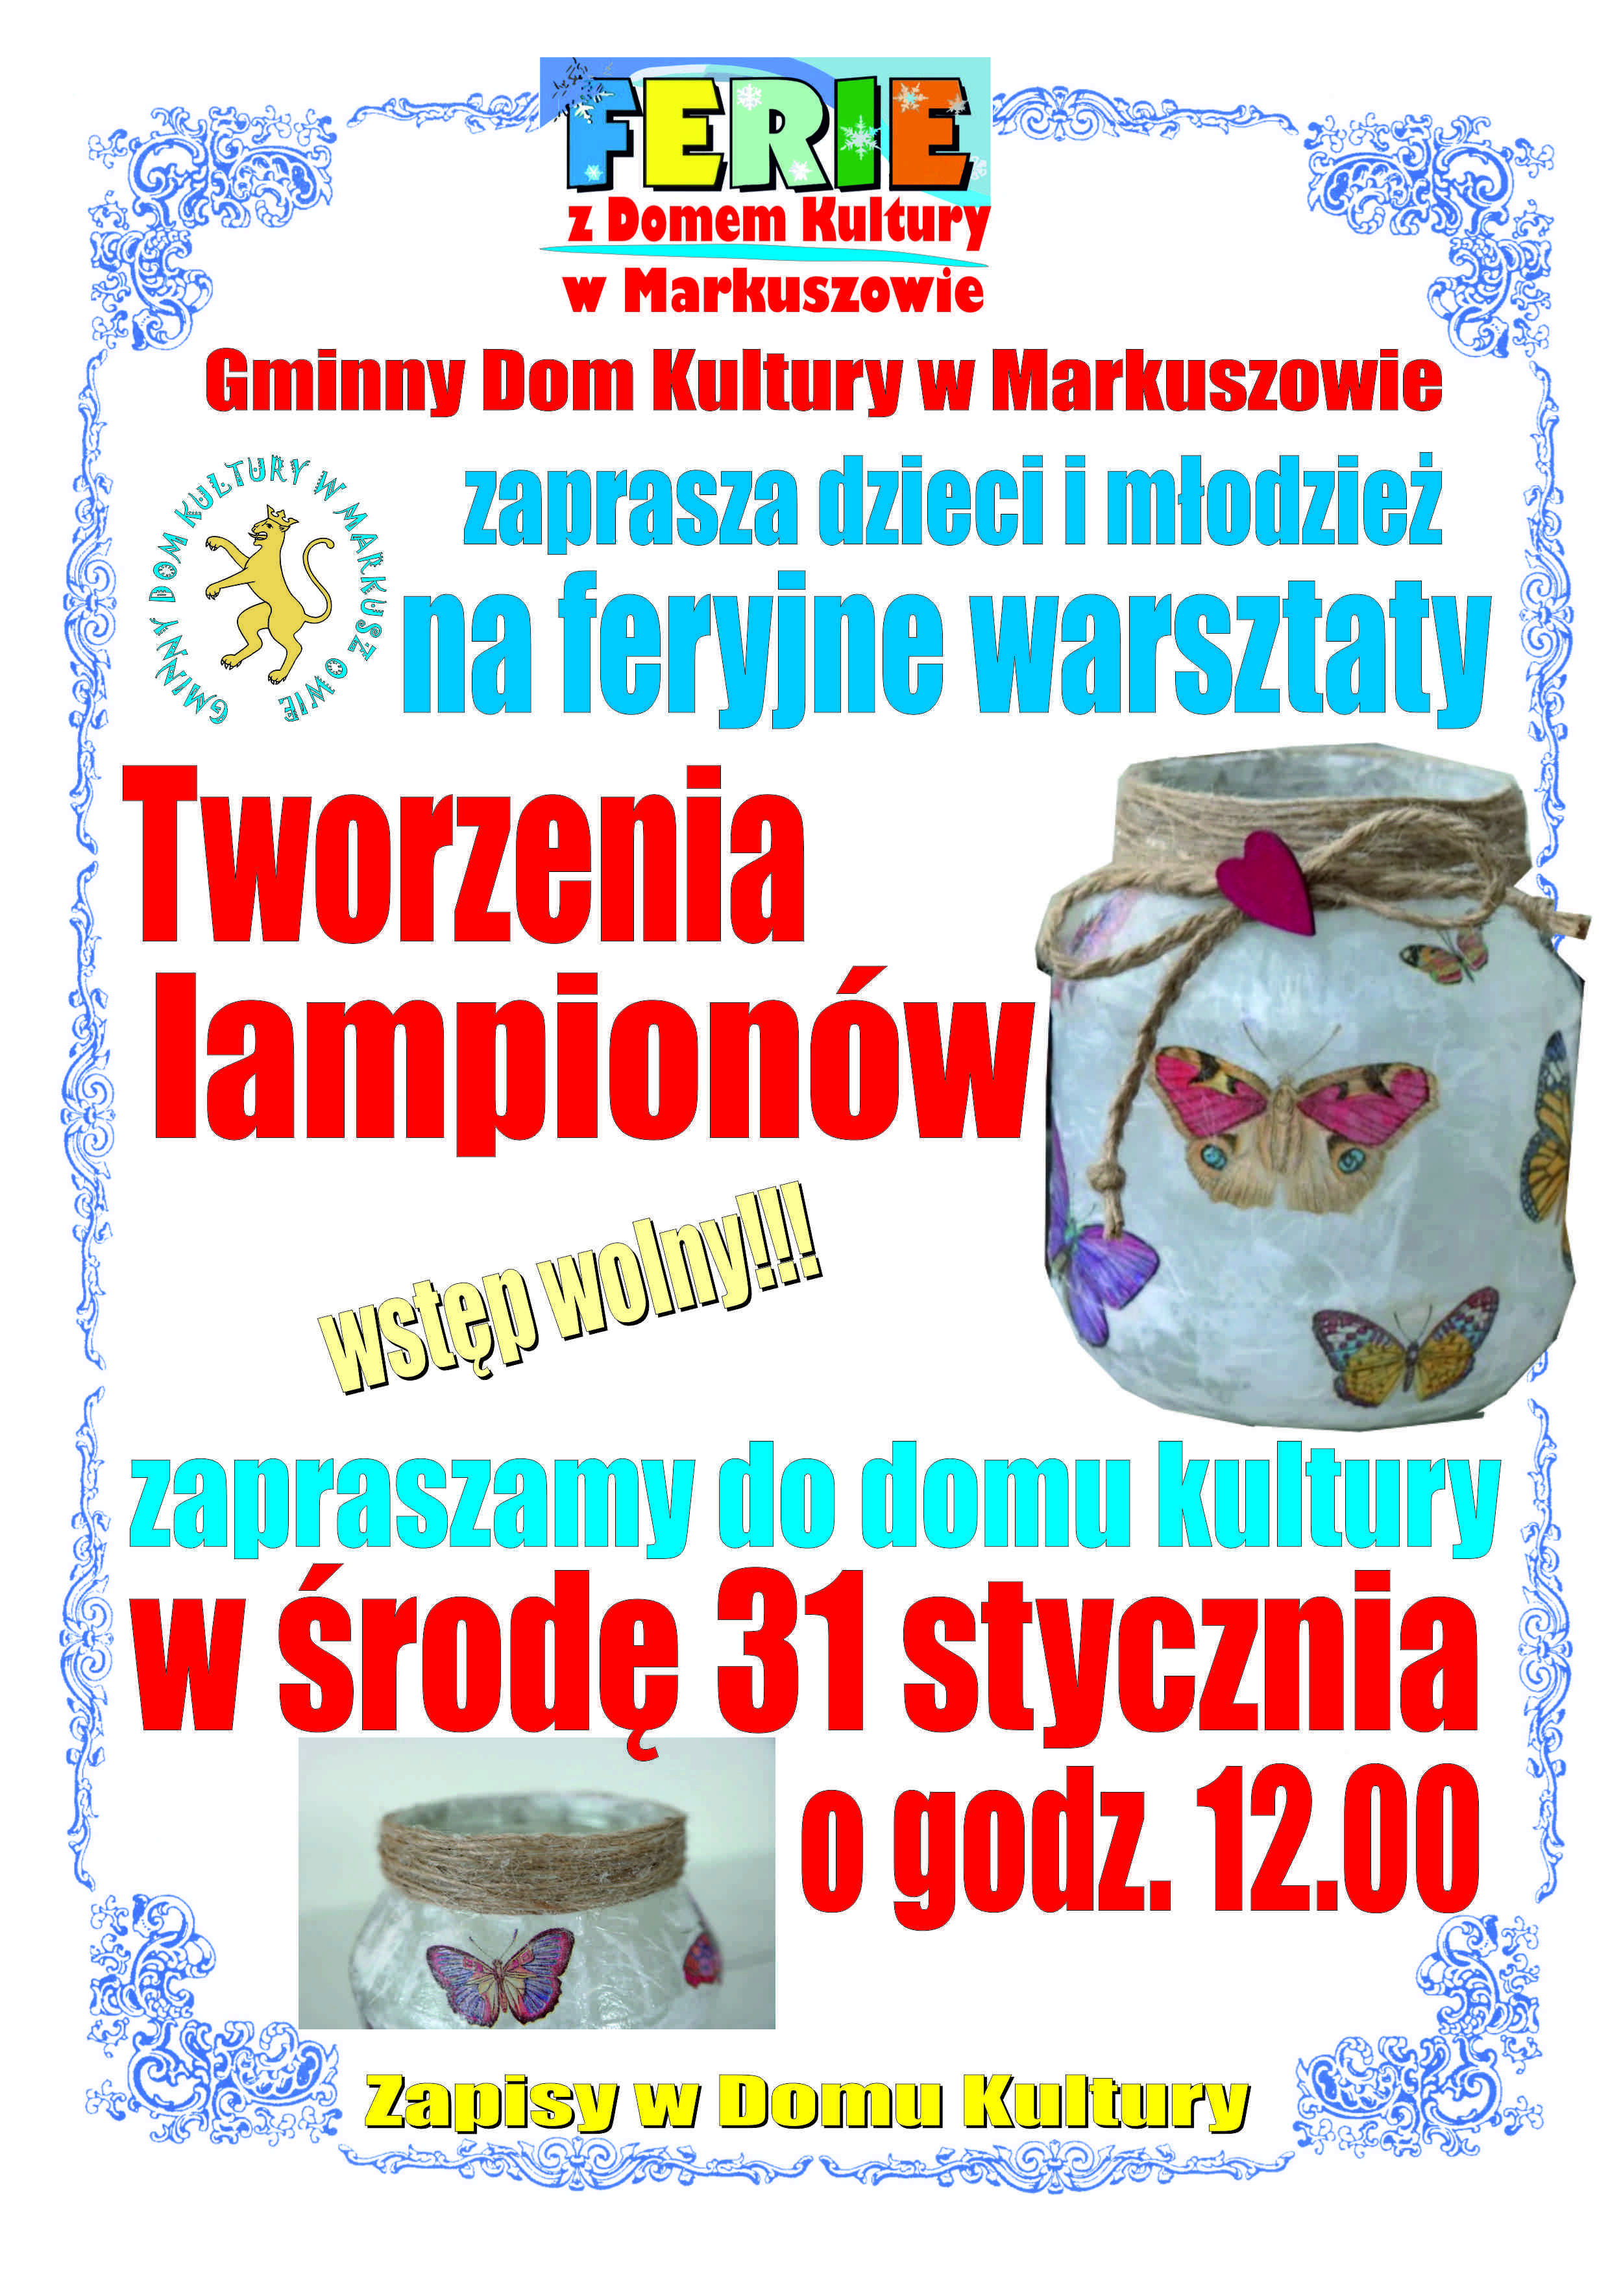 Plakat informacyjny o zajęciach dla dzieci i młodzieży w Domu Kultury w Markuszowie dotyczący tworzenia lampionów w ferie, z motylami, datą środa 31 stycznia, godz. 12.00.